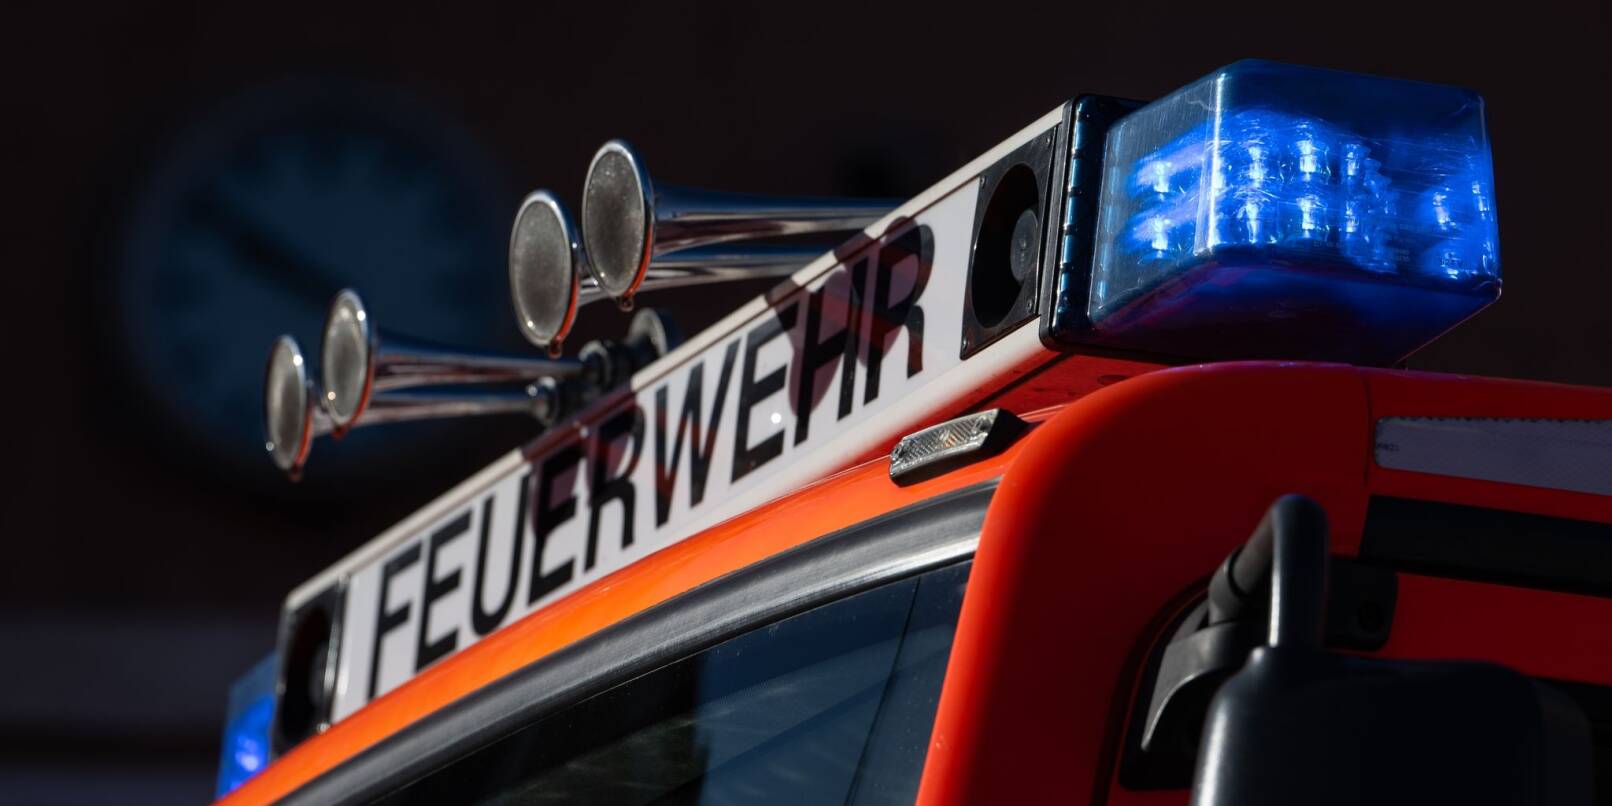 Blaulicht ist auf einem Einsatzfahrzeug der Feuerwehr zu sehen.